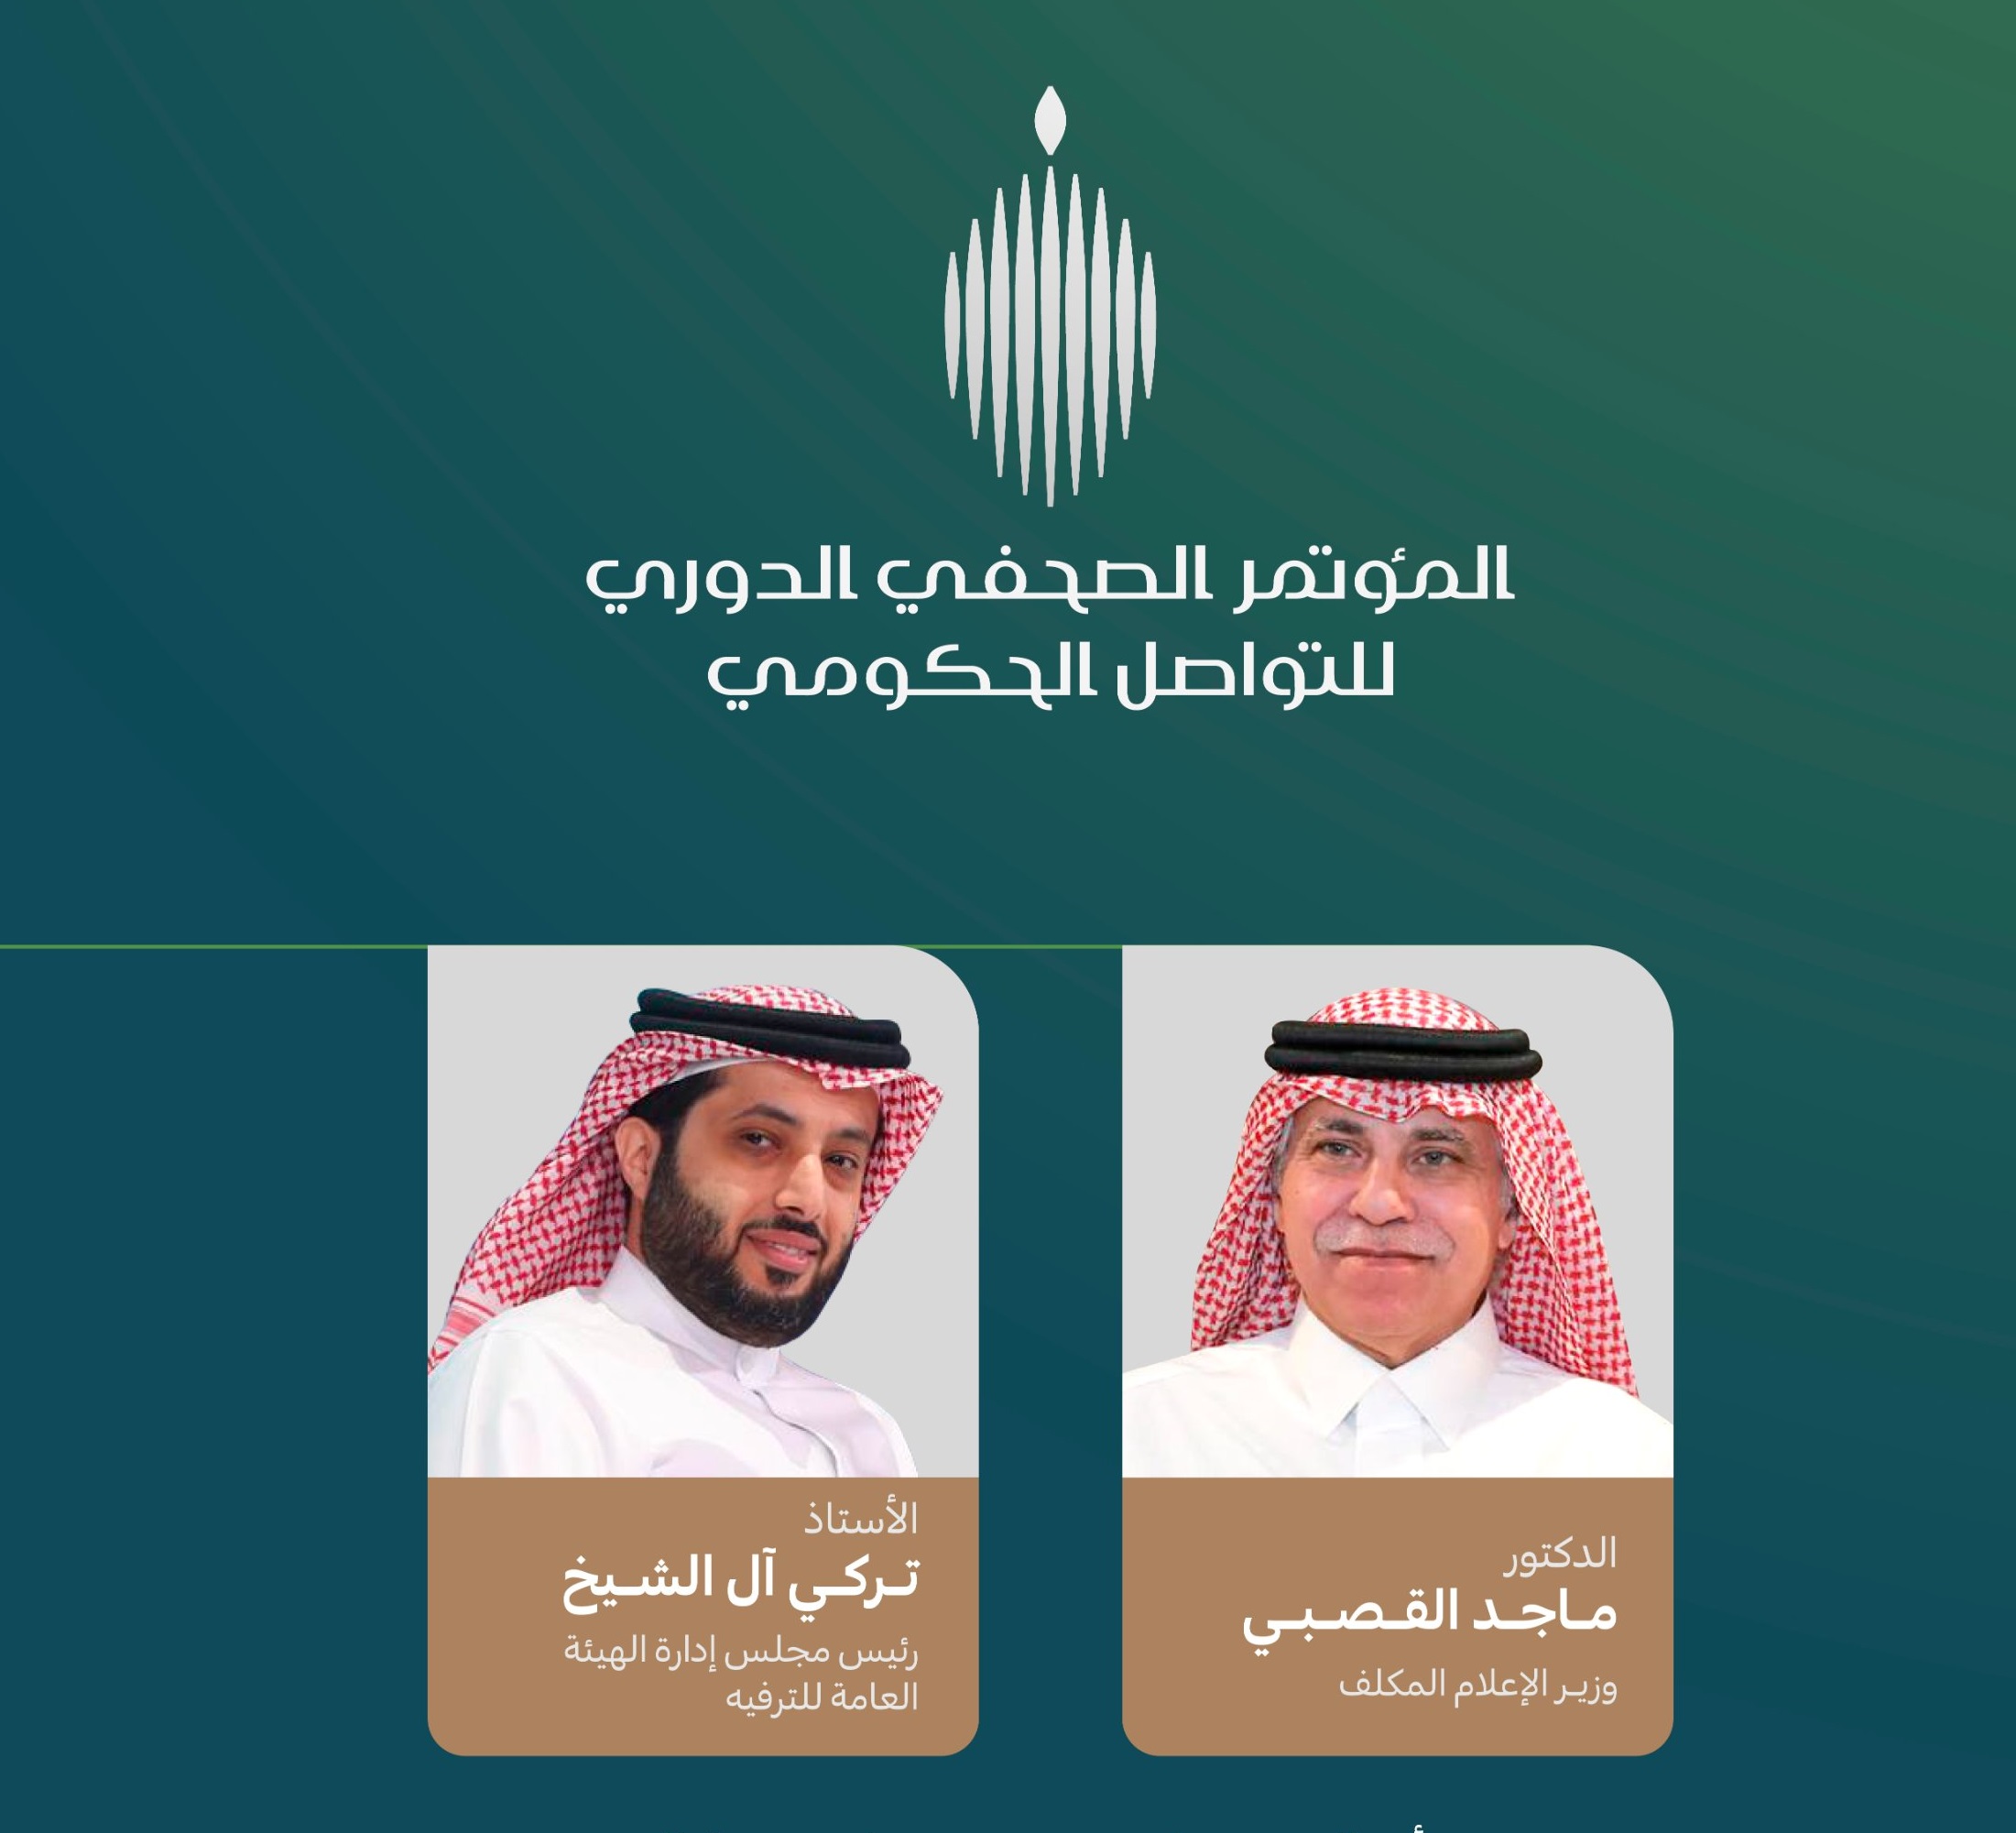 آل الشيخ يطلق موسم الرياض في مؤتمر التواصل الحكومي